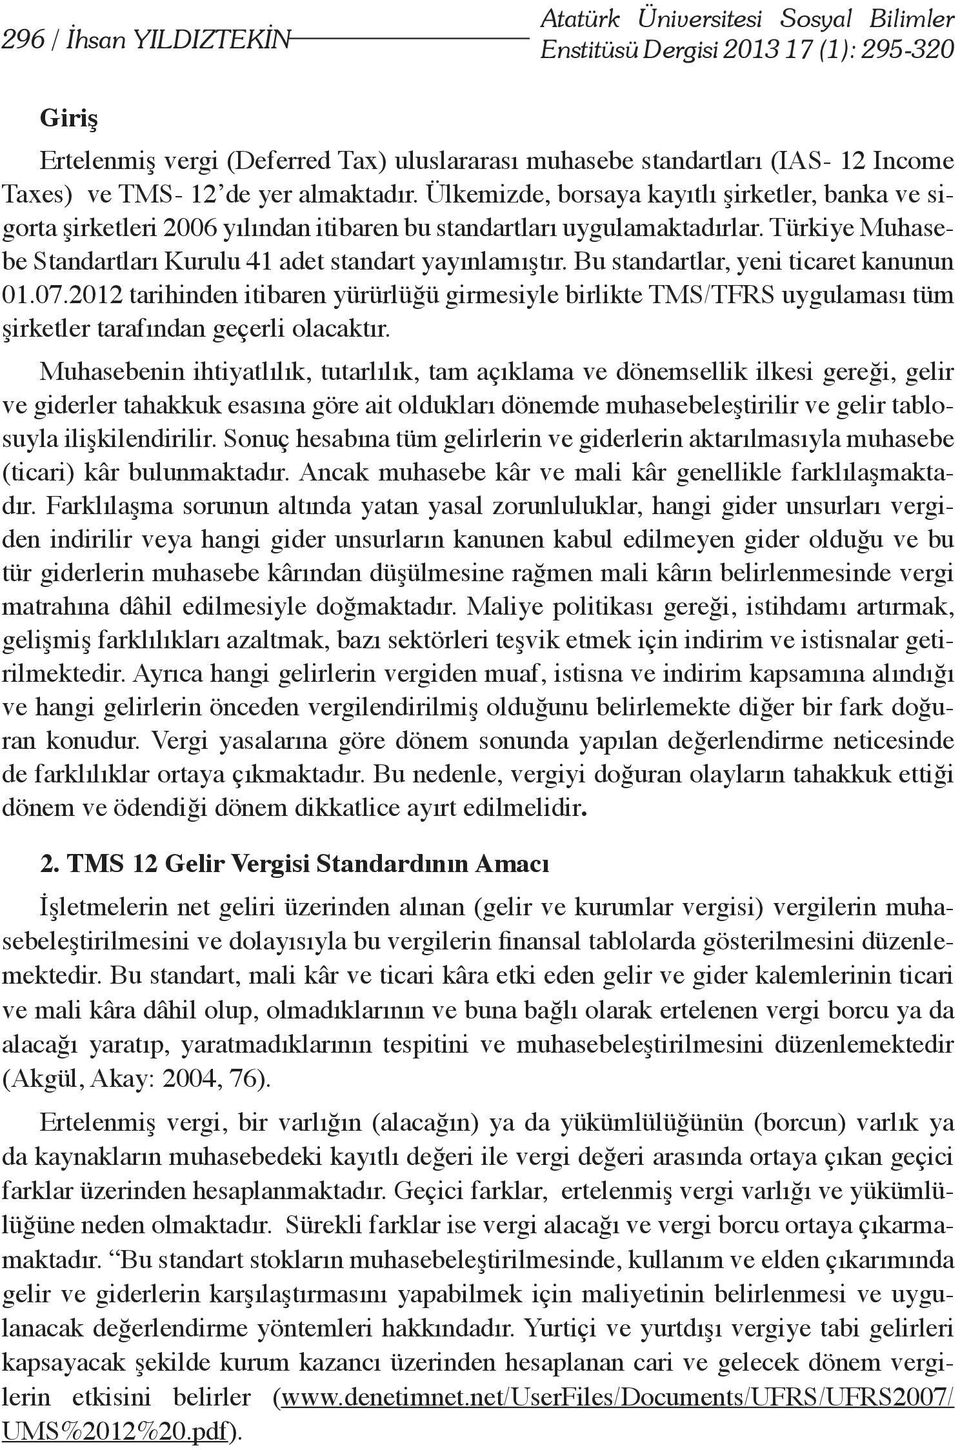 Türkiye Muhasebe Standartları Kurulu 41 adet standart yayınlamıştır. Bu standartlar, yeni ticaret kanunun 01.07.